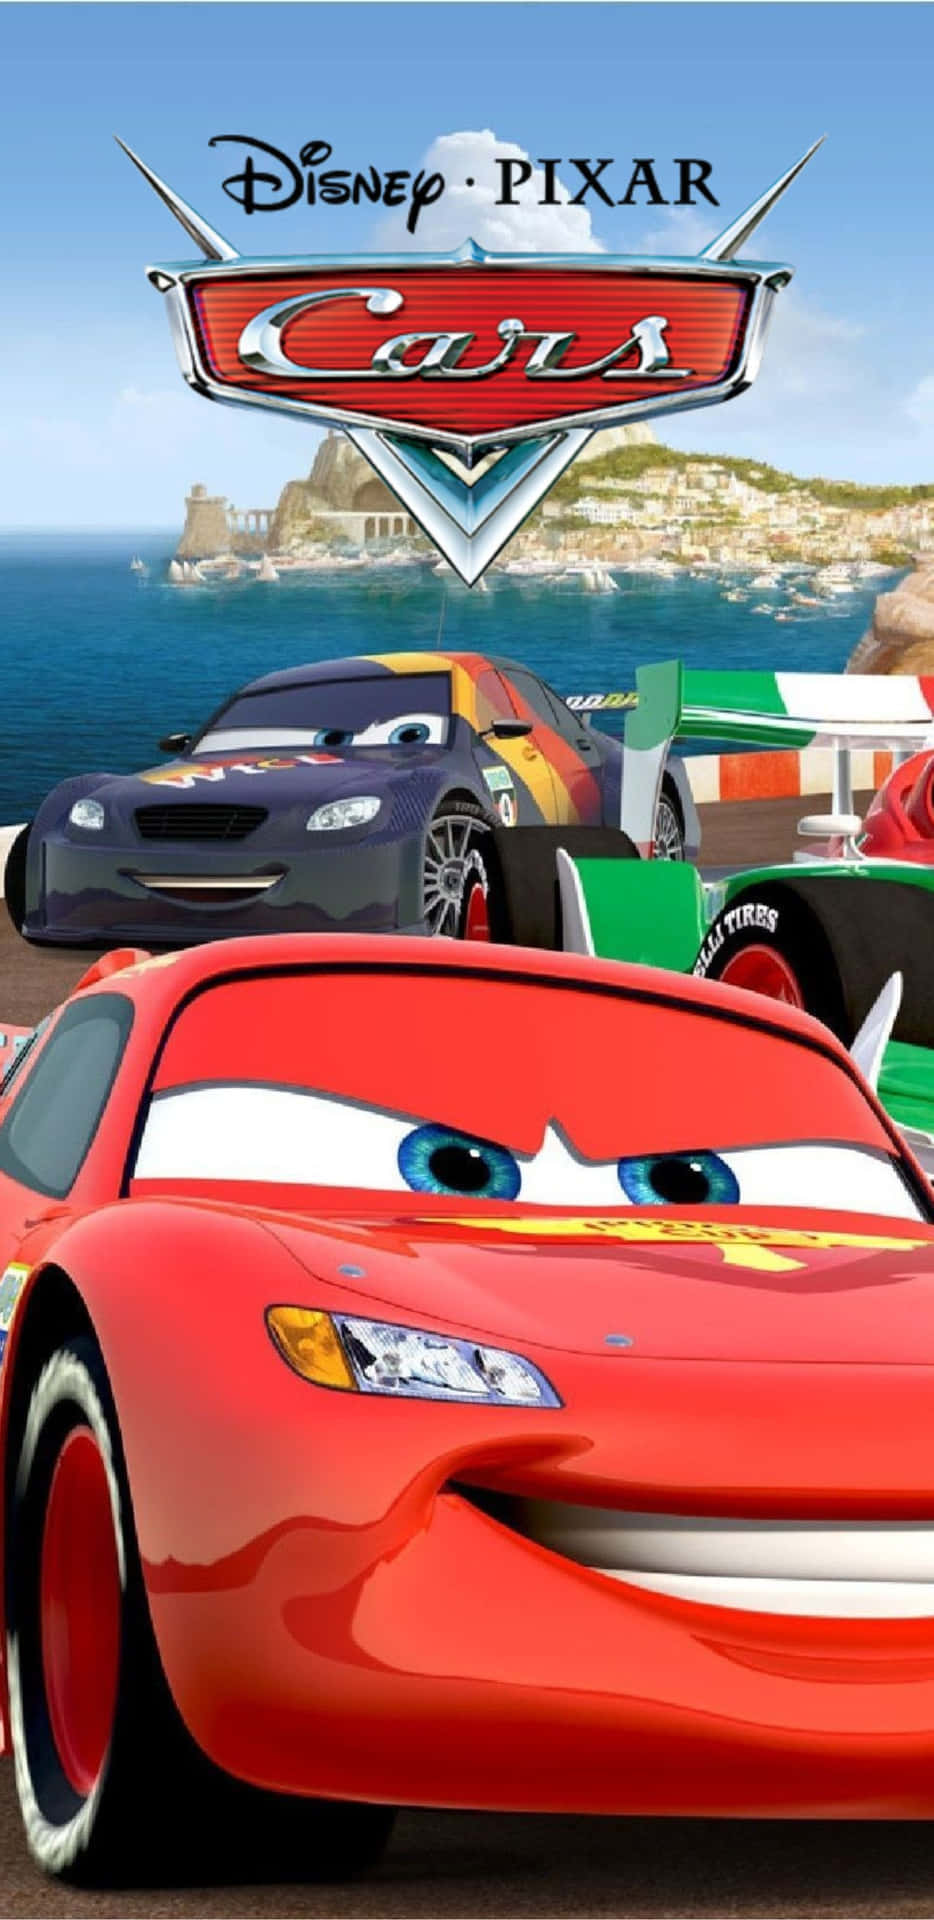 Disneypixar Cars 3 Podría Ser Una Excelente Opción Para Fondos De Pantalla De Computadoras O Dispositivos Móviles.